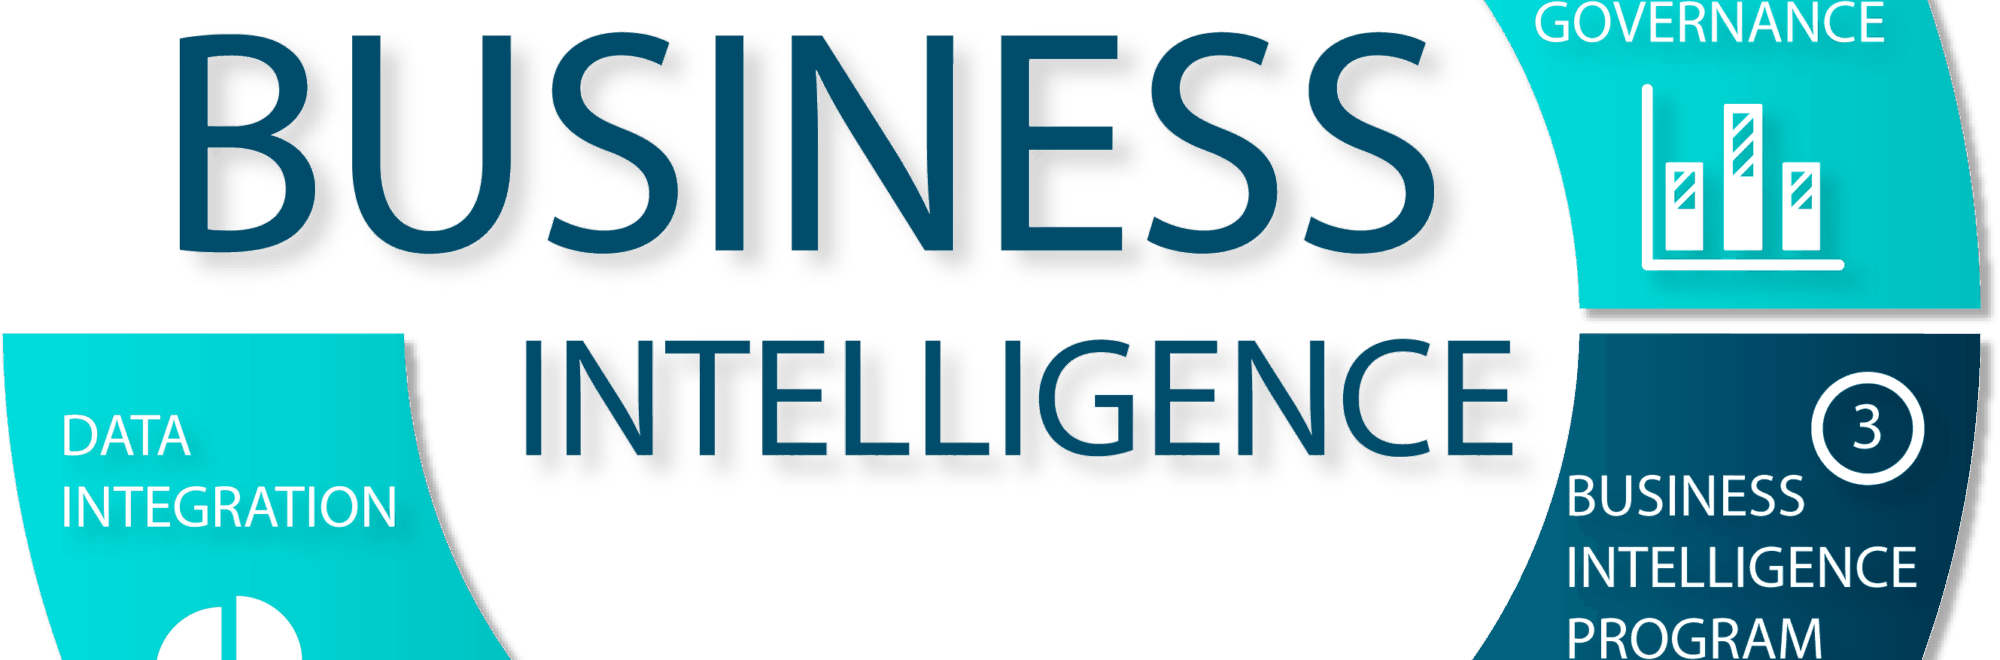 Business intelligence: qué es y cómo adquirirla